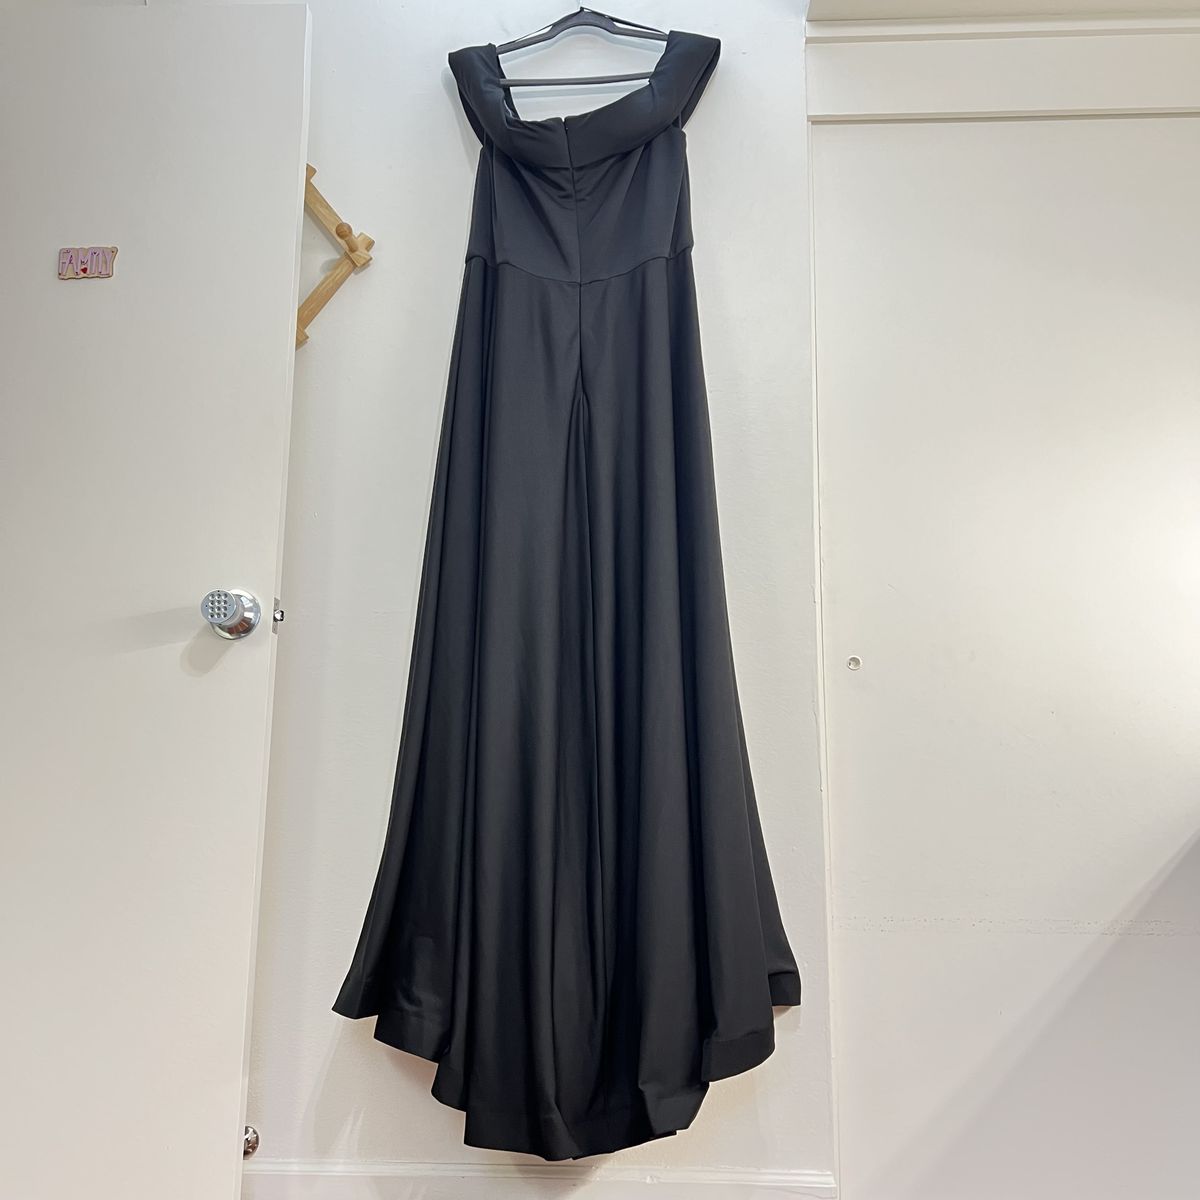 Style 29007 La Femme Plus Size 22 Prom Off The Shoulder Black Side Slit Dress on Queenly